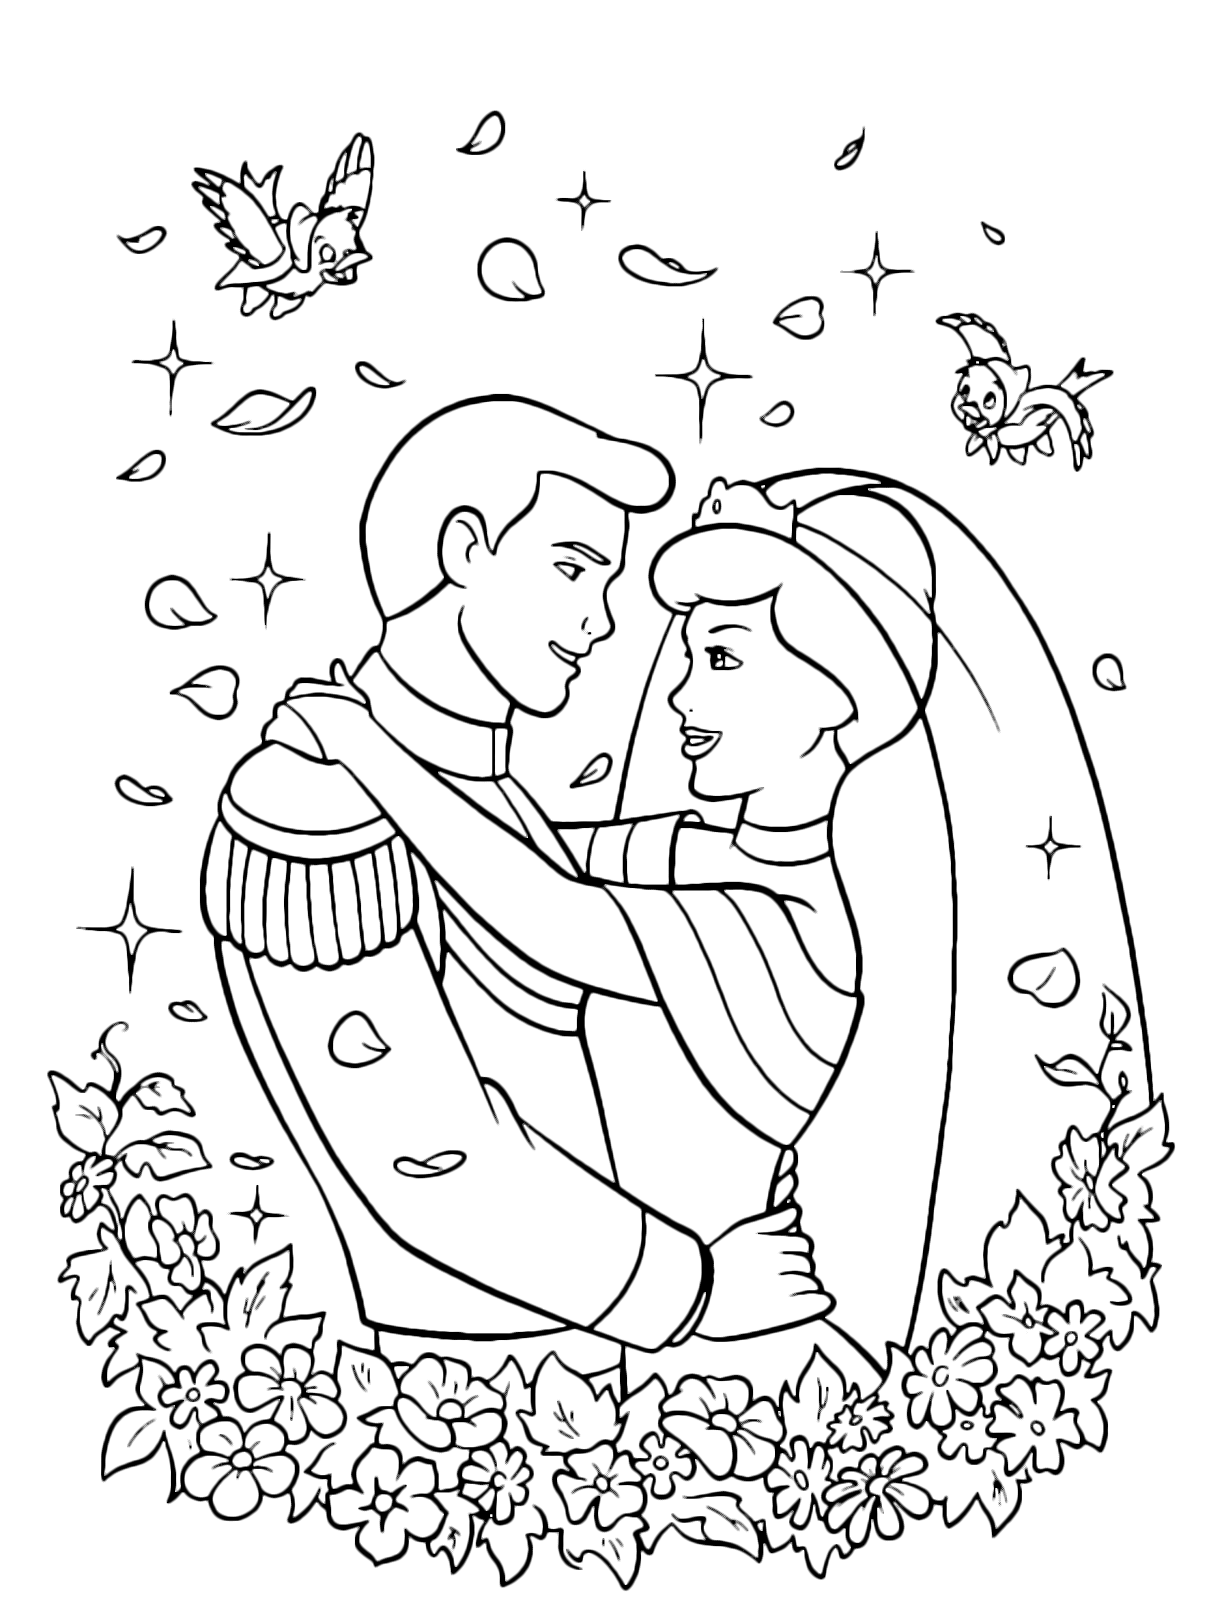 Cenerentola - Il Principe e Cenerentola finalmente sposi